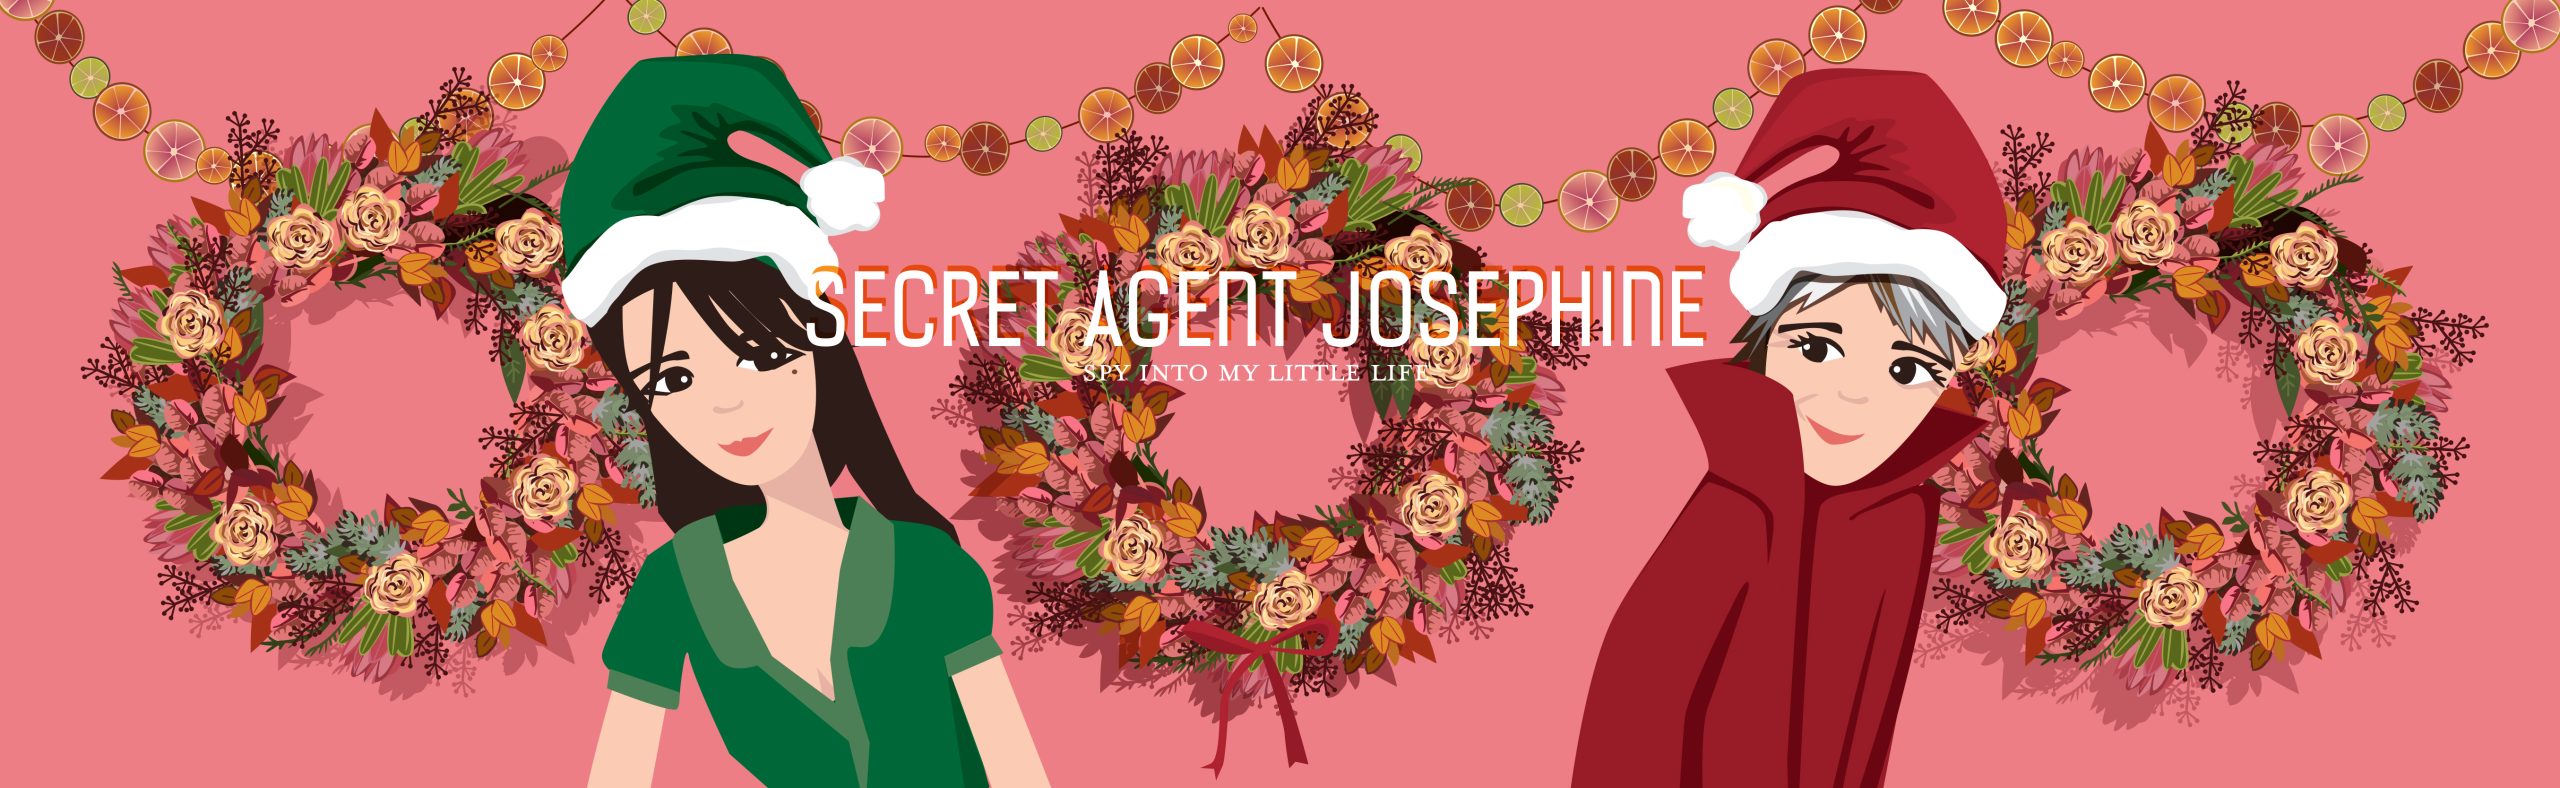 Secret Agent Josephine – spy into my little life